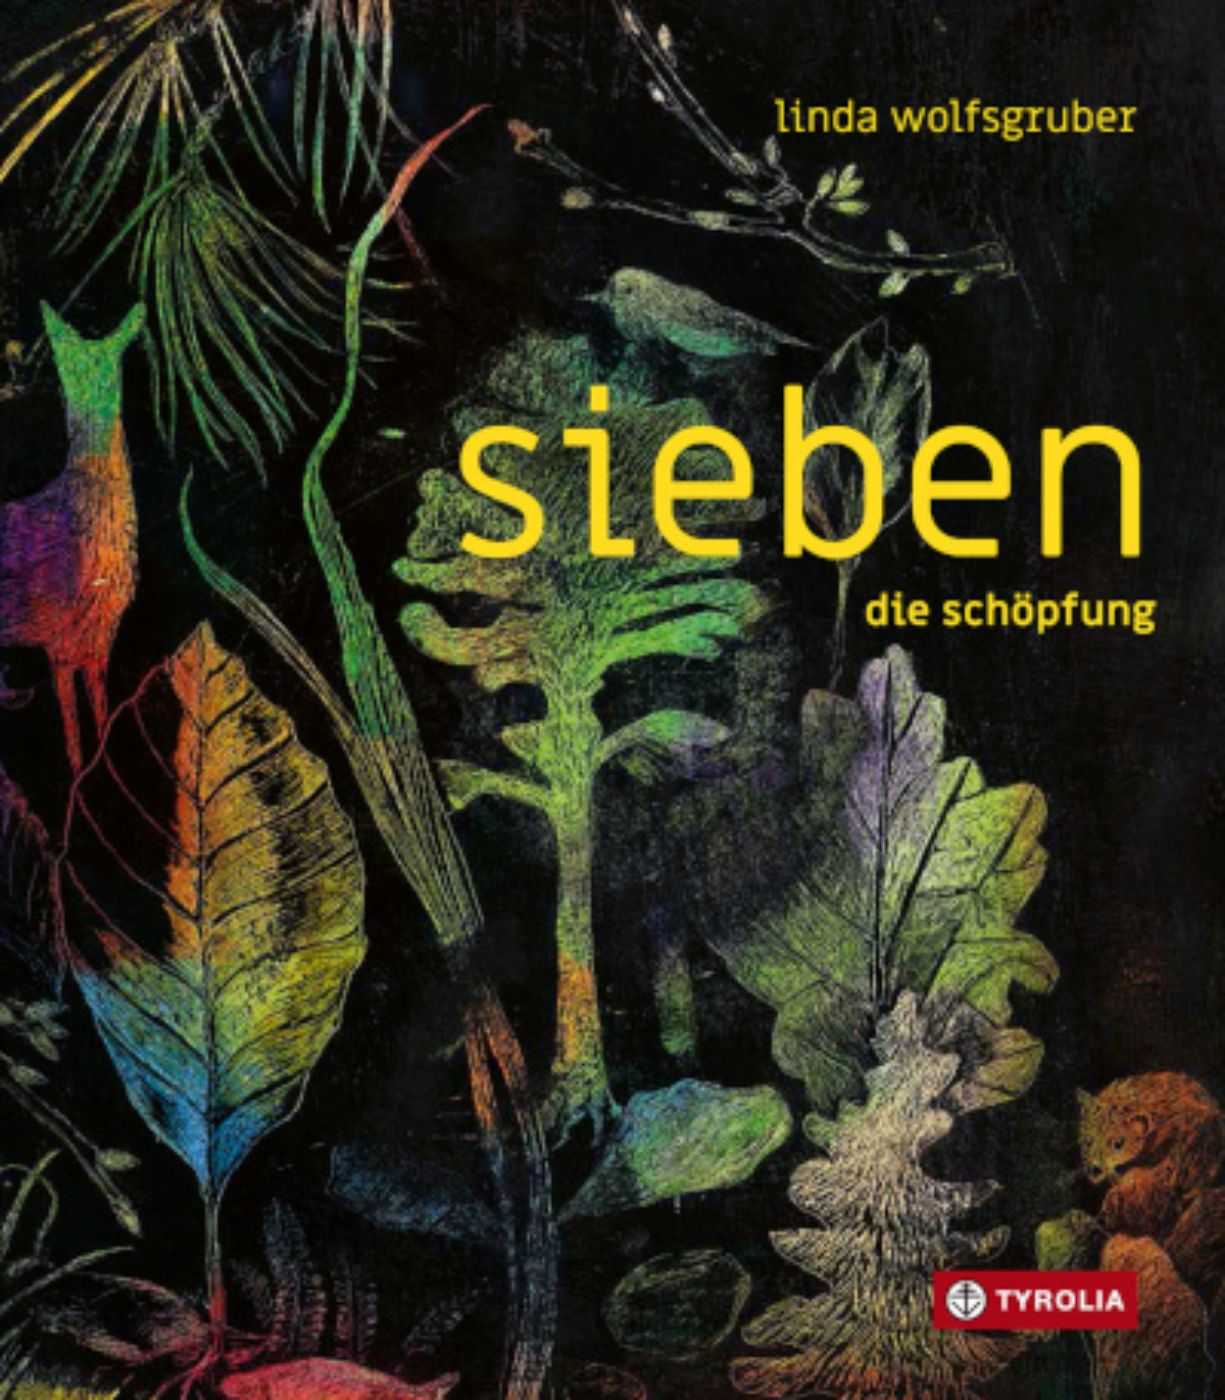 Cover sieben, die Schöpfung (c) Tyrolia Verlag